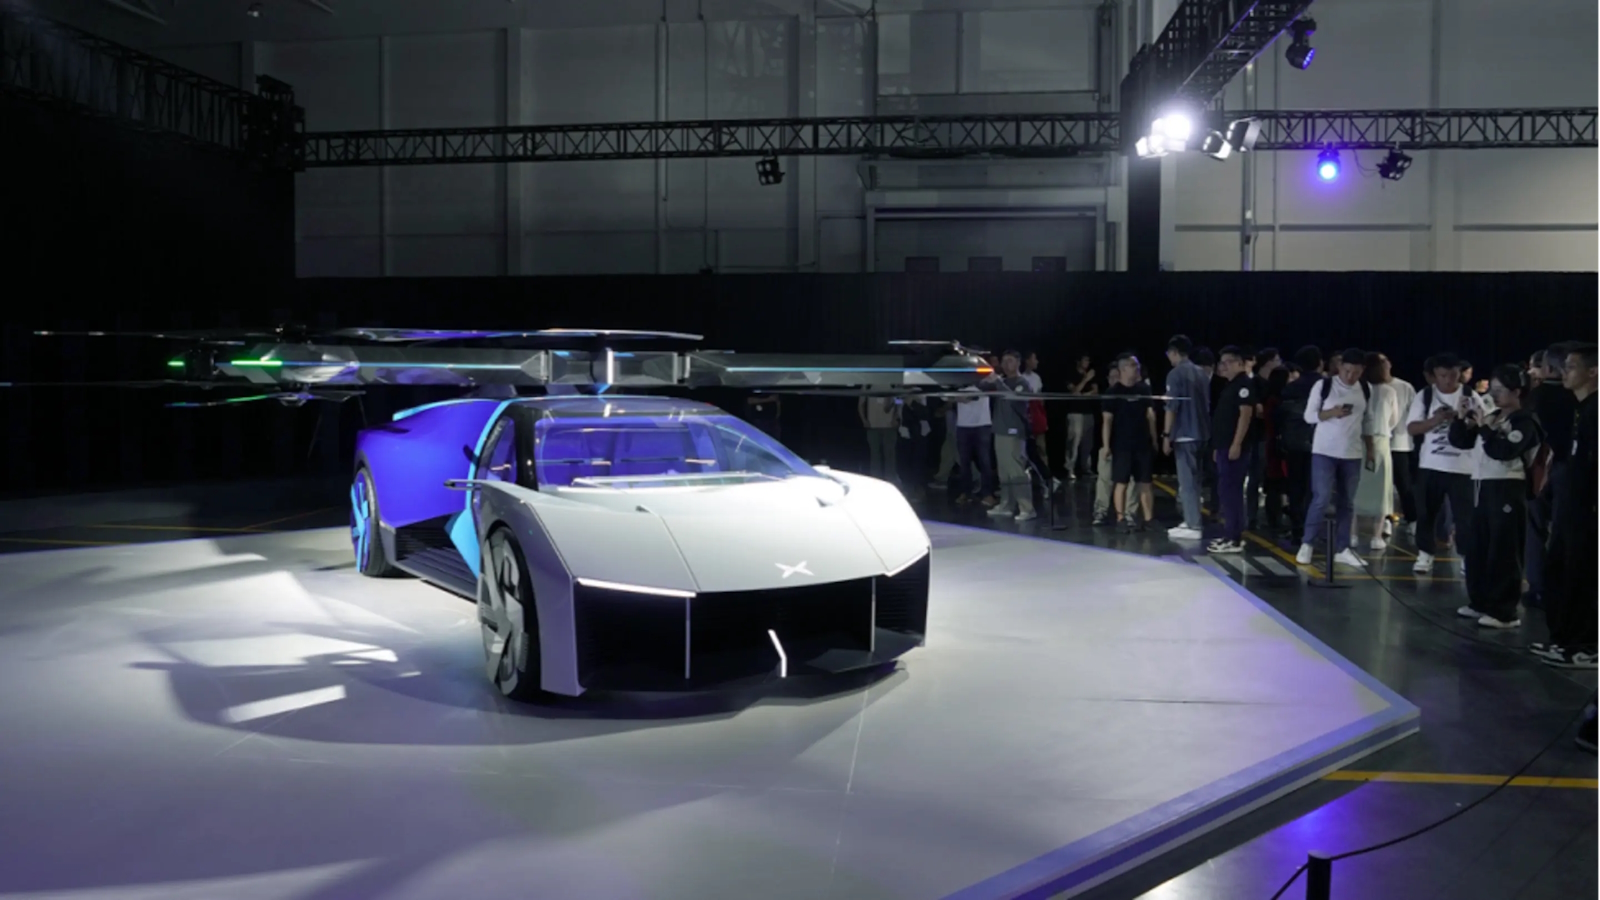 Le concept de supercar volante a été dévoilé lors d’un événement organisé par le constructeur de voitures électriques Xpeng. © Xpeng AeroHT